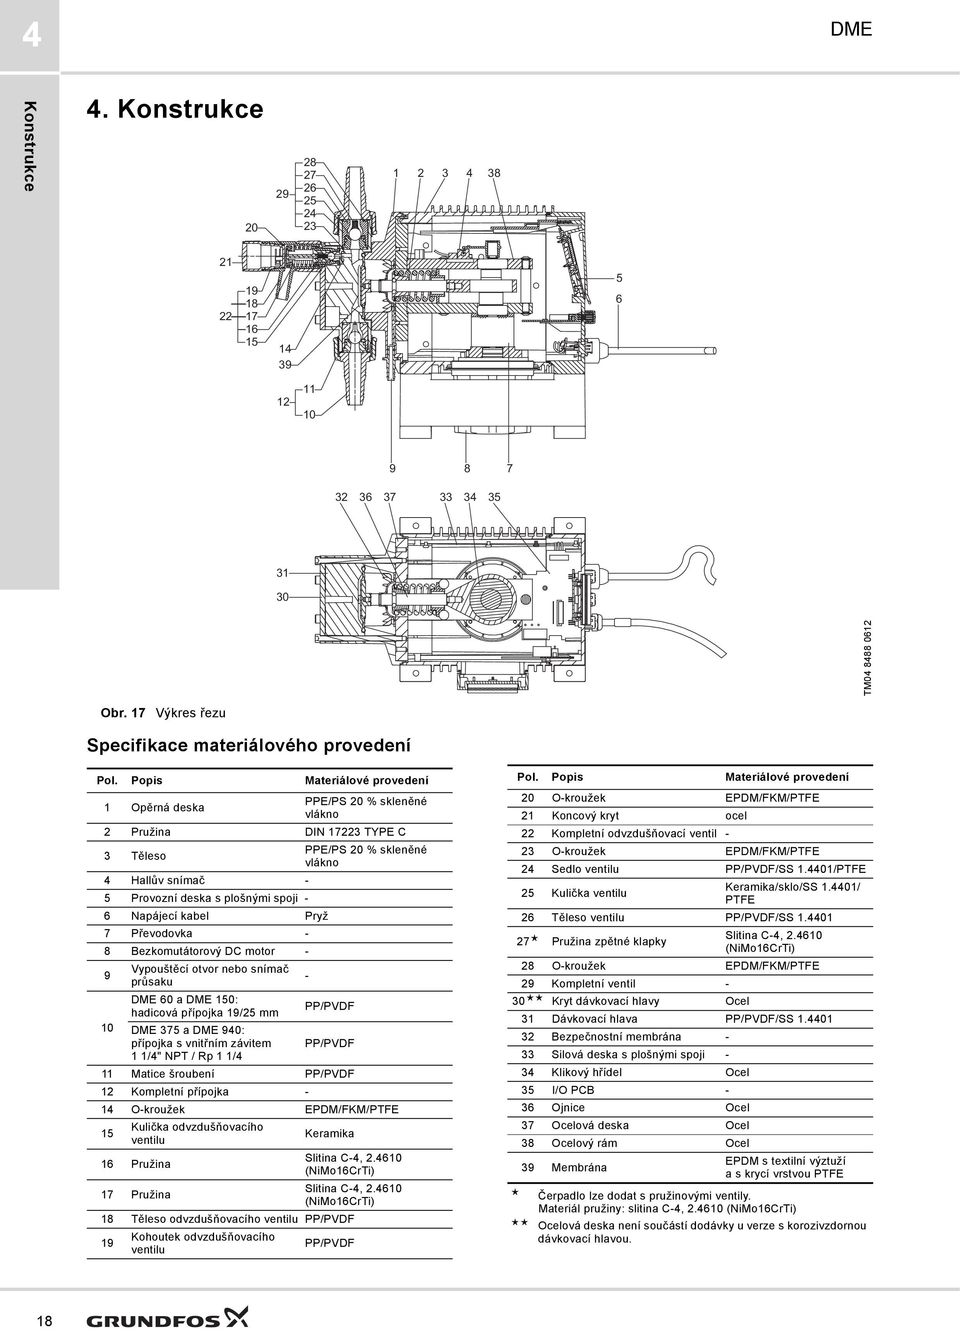 Pryž 7 Převodovka - 8 Bezkomutátorový DC motor - 9 Vypouštěcí otvor nebo snímač průsaku 60 a 150: hadicová přípojka 19/5 mm PP/PVDF 10 75 a 940: přípojka s vnitřním závitem PP/PVDF 1 1/4" NPT / Rp 1